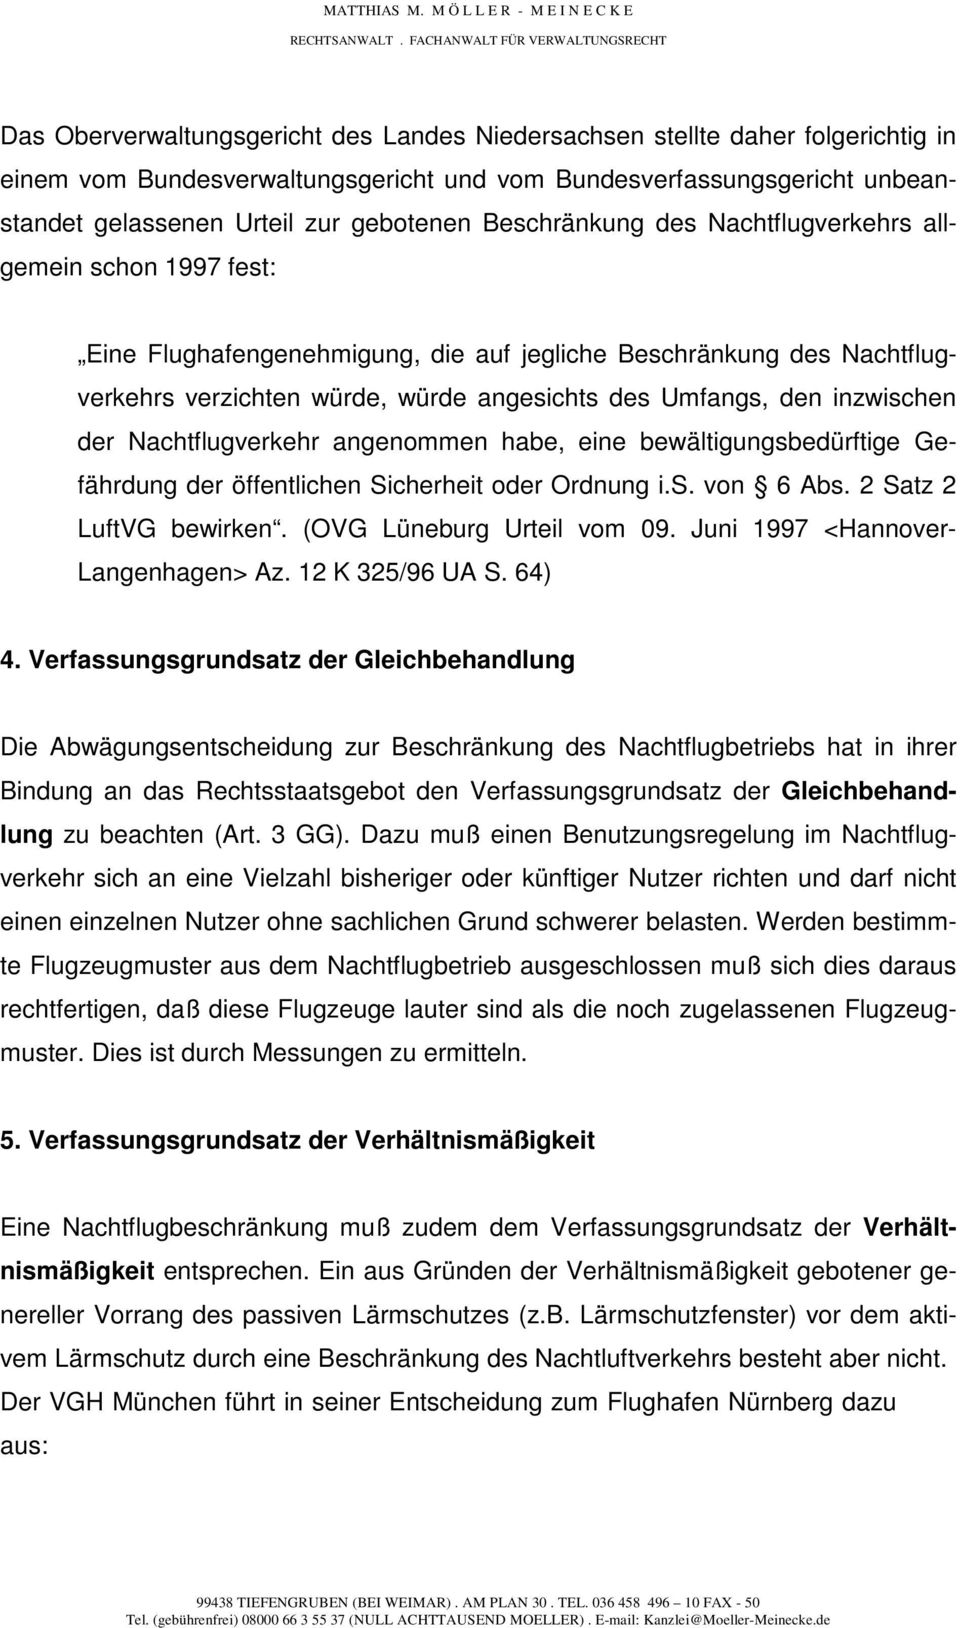 inzwischen der Nachtflugverkehr angenommen habe, eine bewältigungsbedürftige Gefährdung der öffentlichen Sicherheit oder Ordnung i.s. von 6 Abs. 2 Satz 2 LuftVG bewirken. (OVG Lüneburg Urteil vom 09.